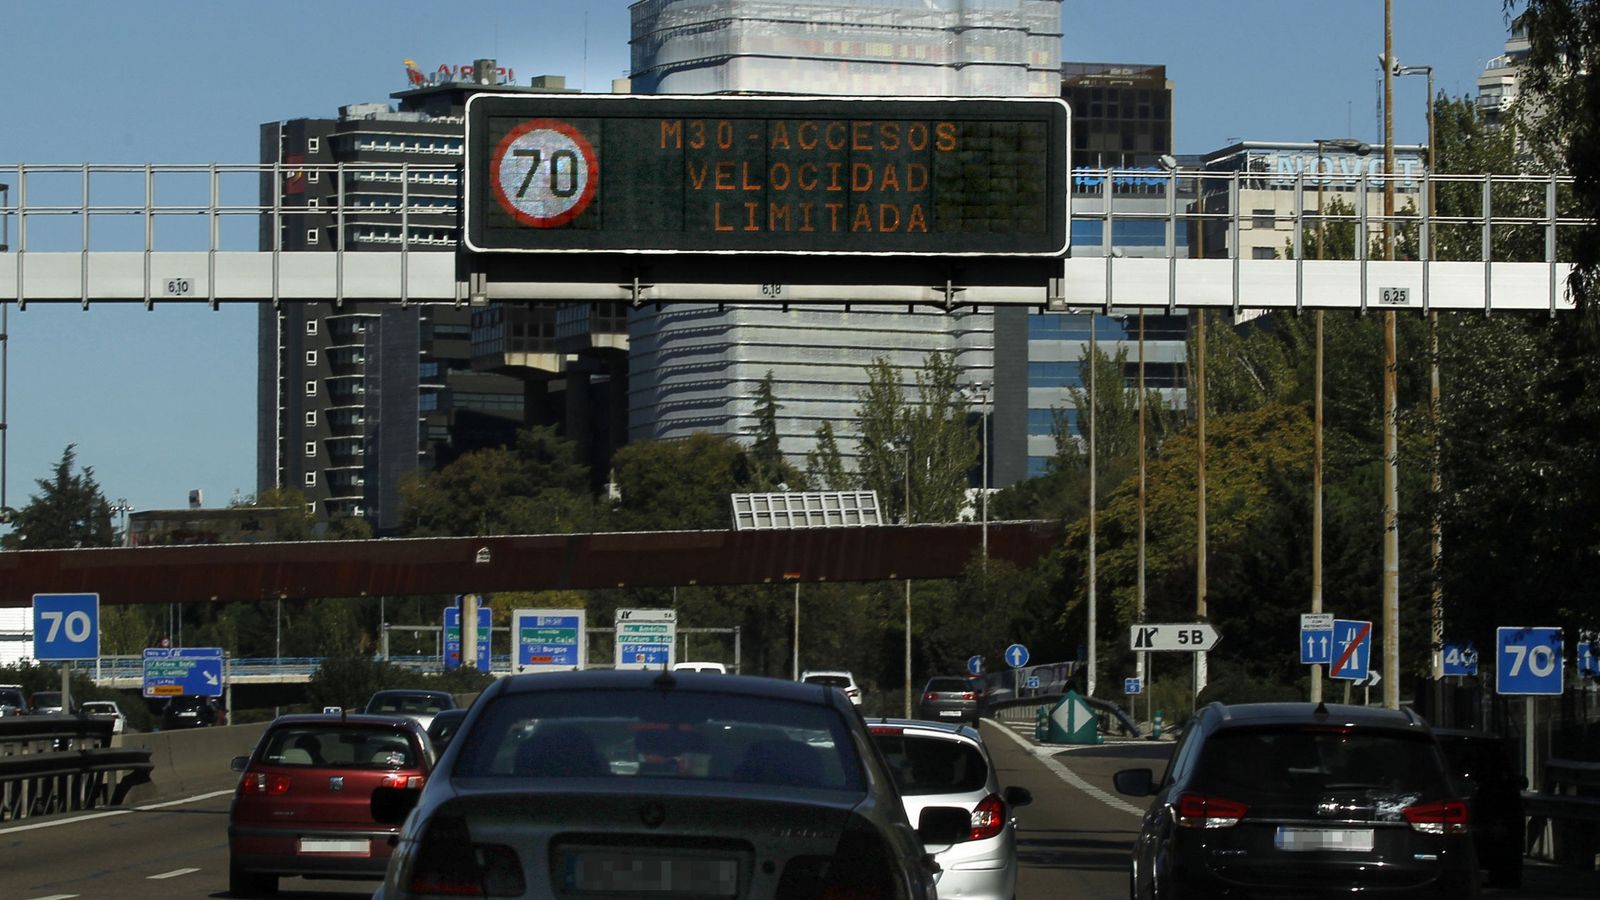 Foto: El Ayuntamiento de Madrid rebaja el tope de velocidad máxima de 90 a 70 kilómetros por hora en la M-30 y los accesos a la ciudad con motivo de la alta contaminación. (Efe)